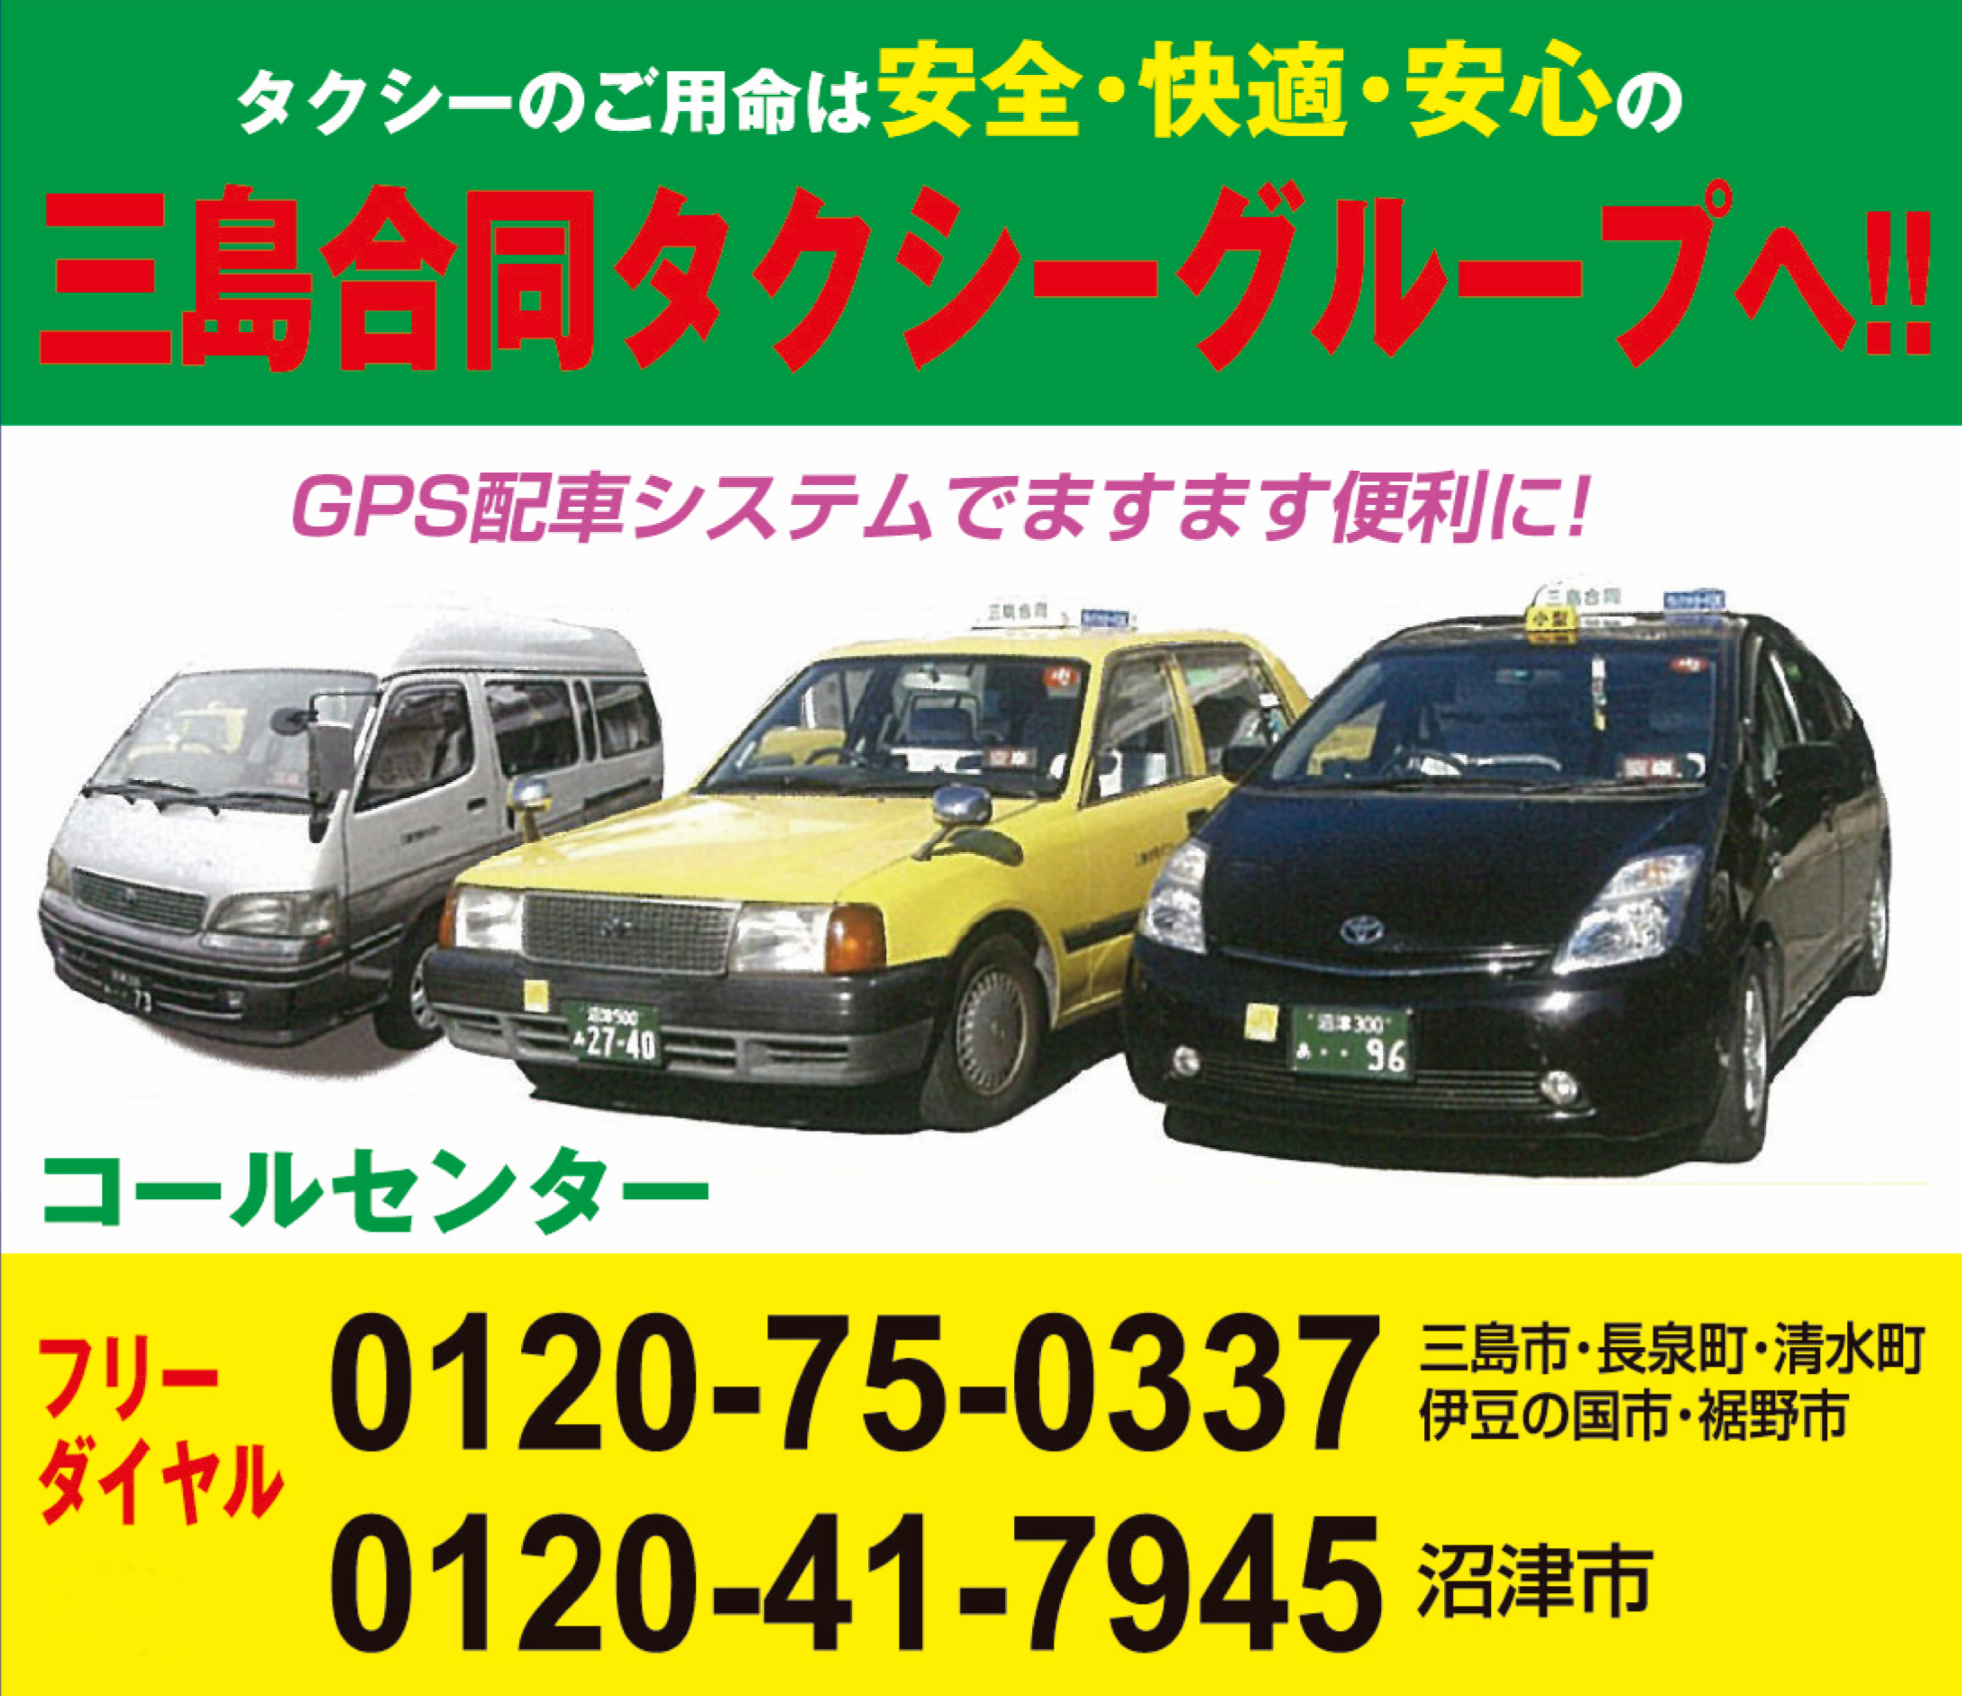 三島合同タクシー株式会社 新宿営業所